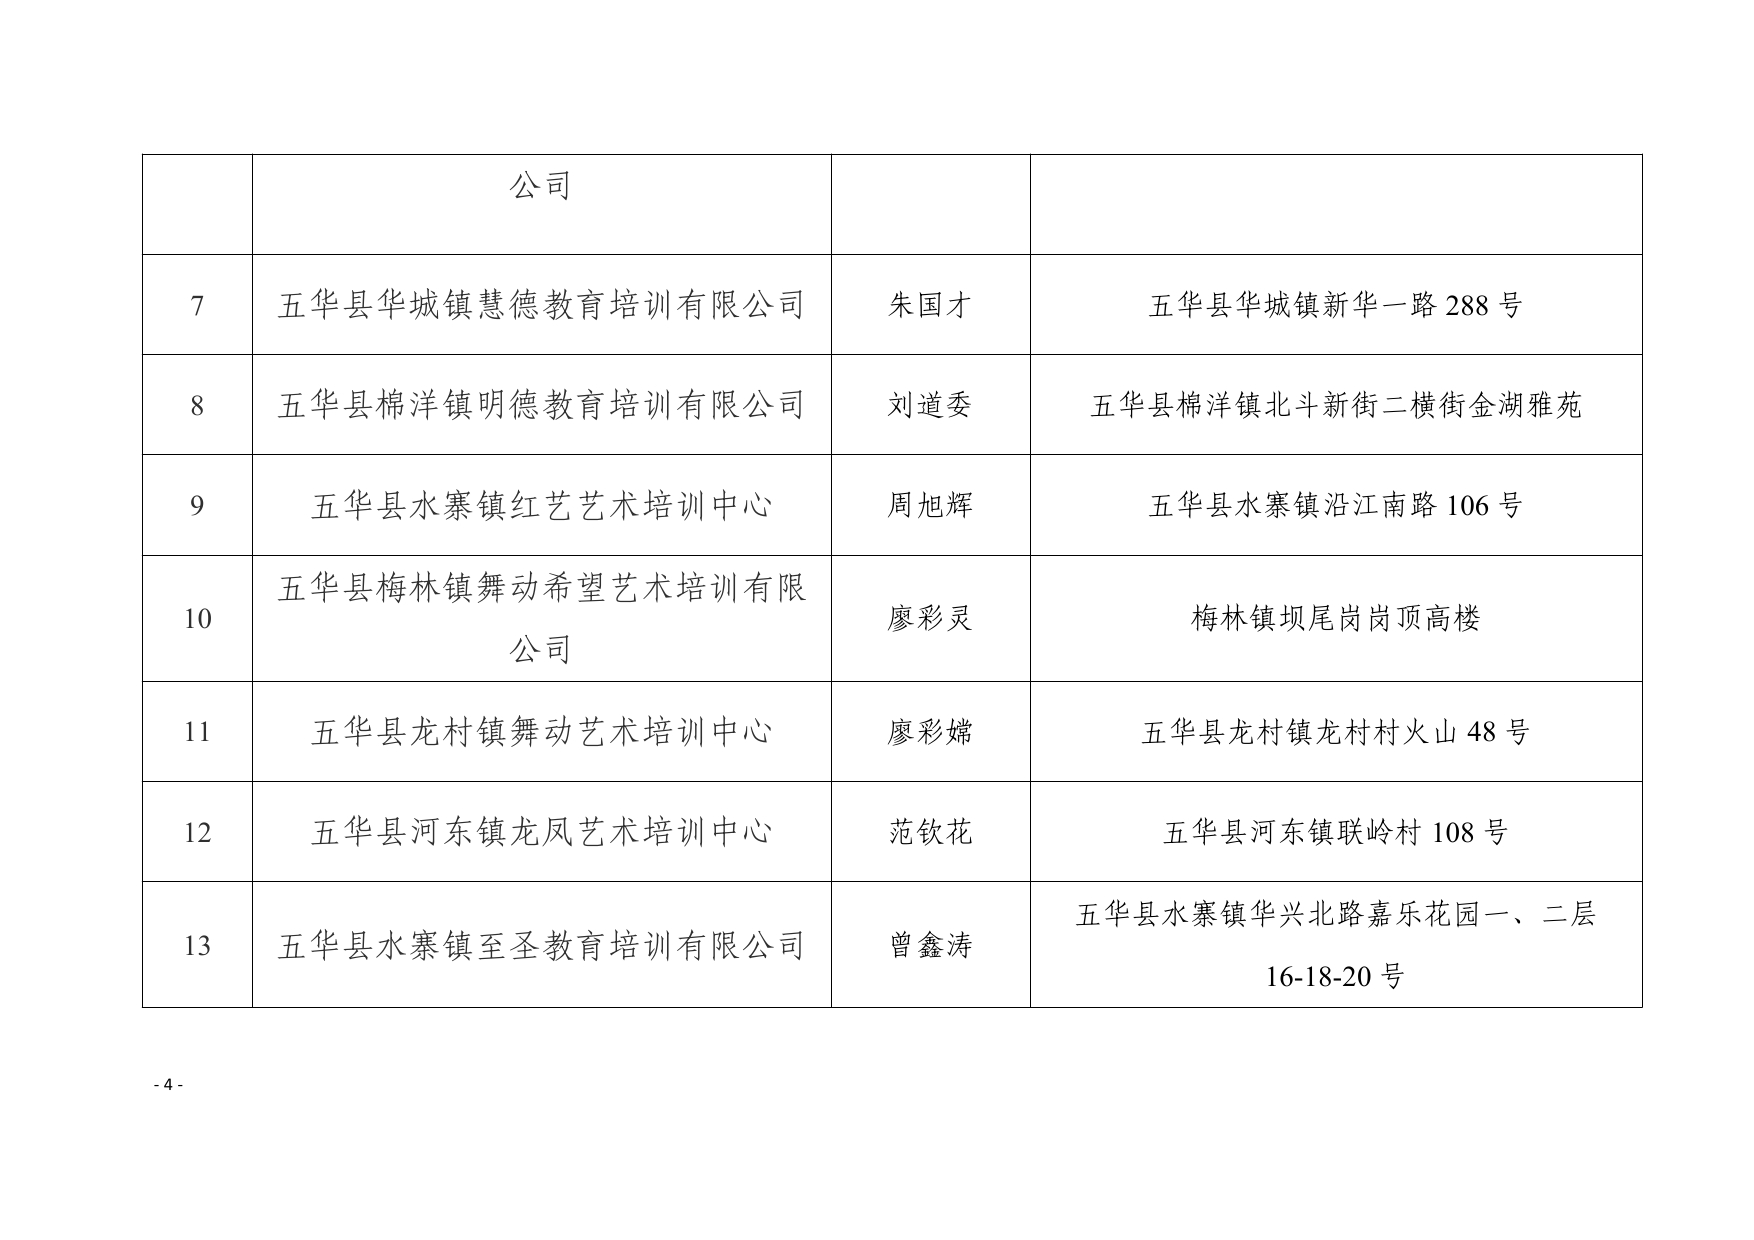 关于同意五华县水寨镇同诚教育培训有限公司等十六所校外培训机构设立的公示0003.jpg